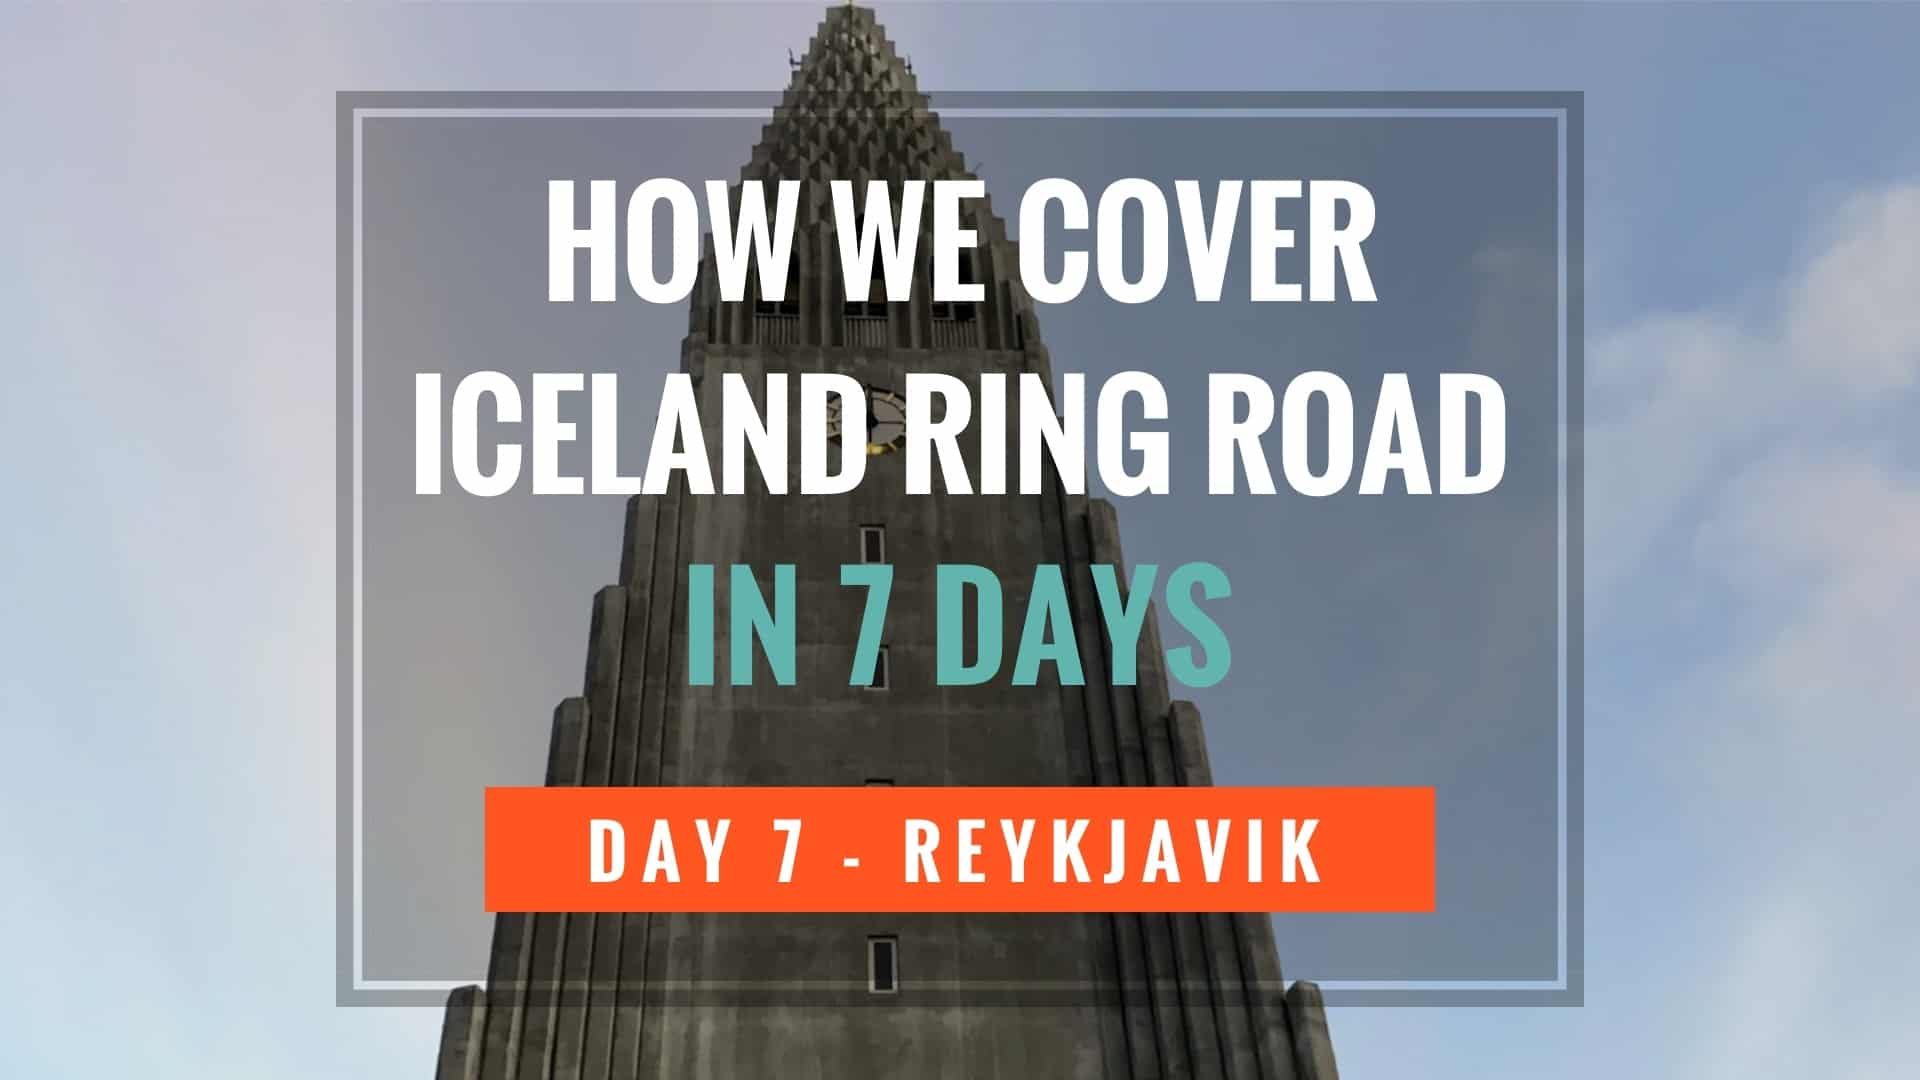 Iceland 7 Days - Reykjavik